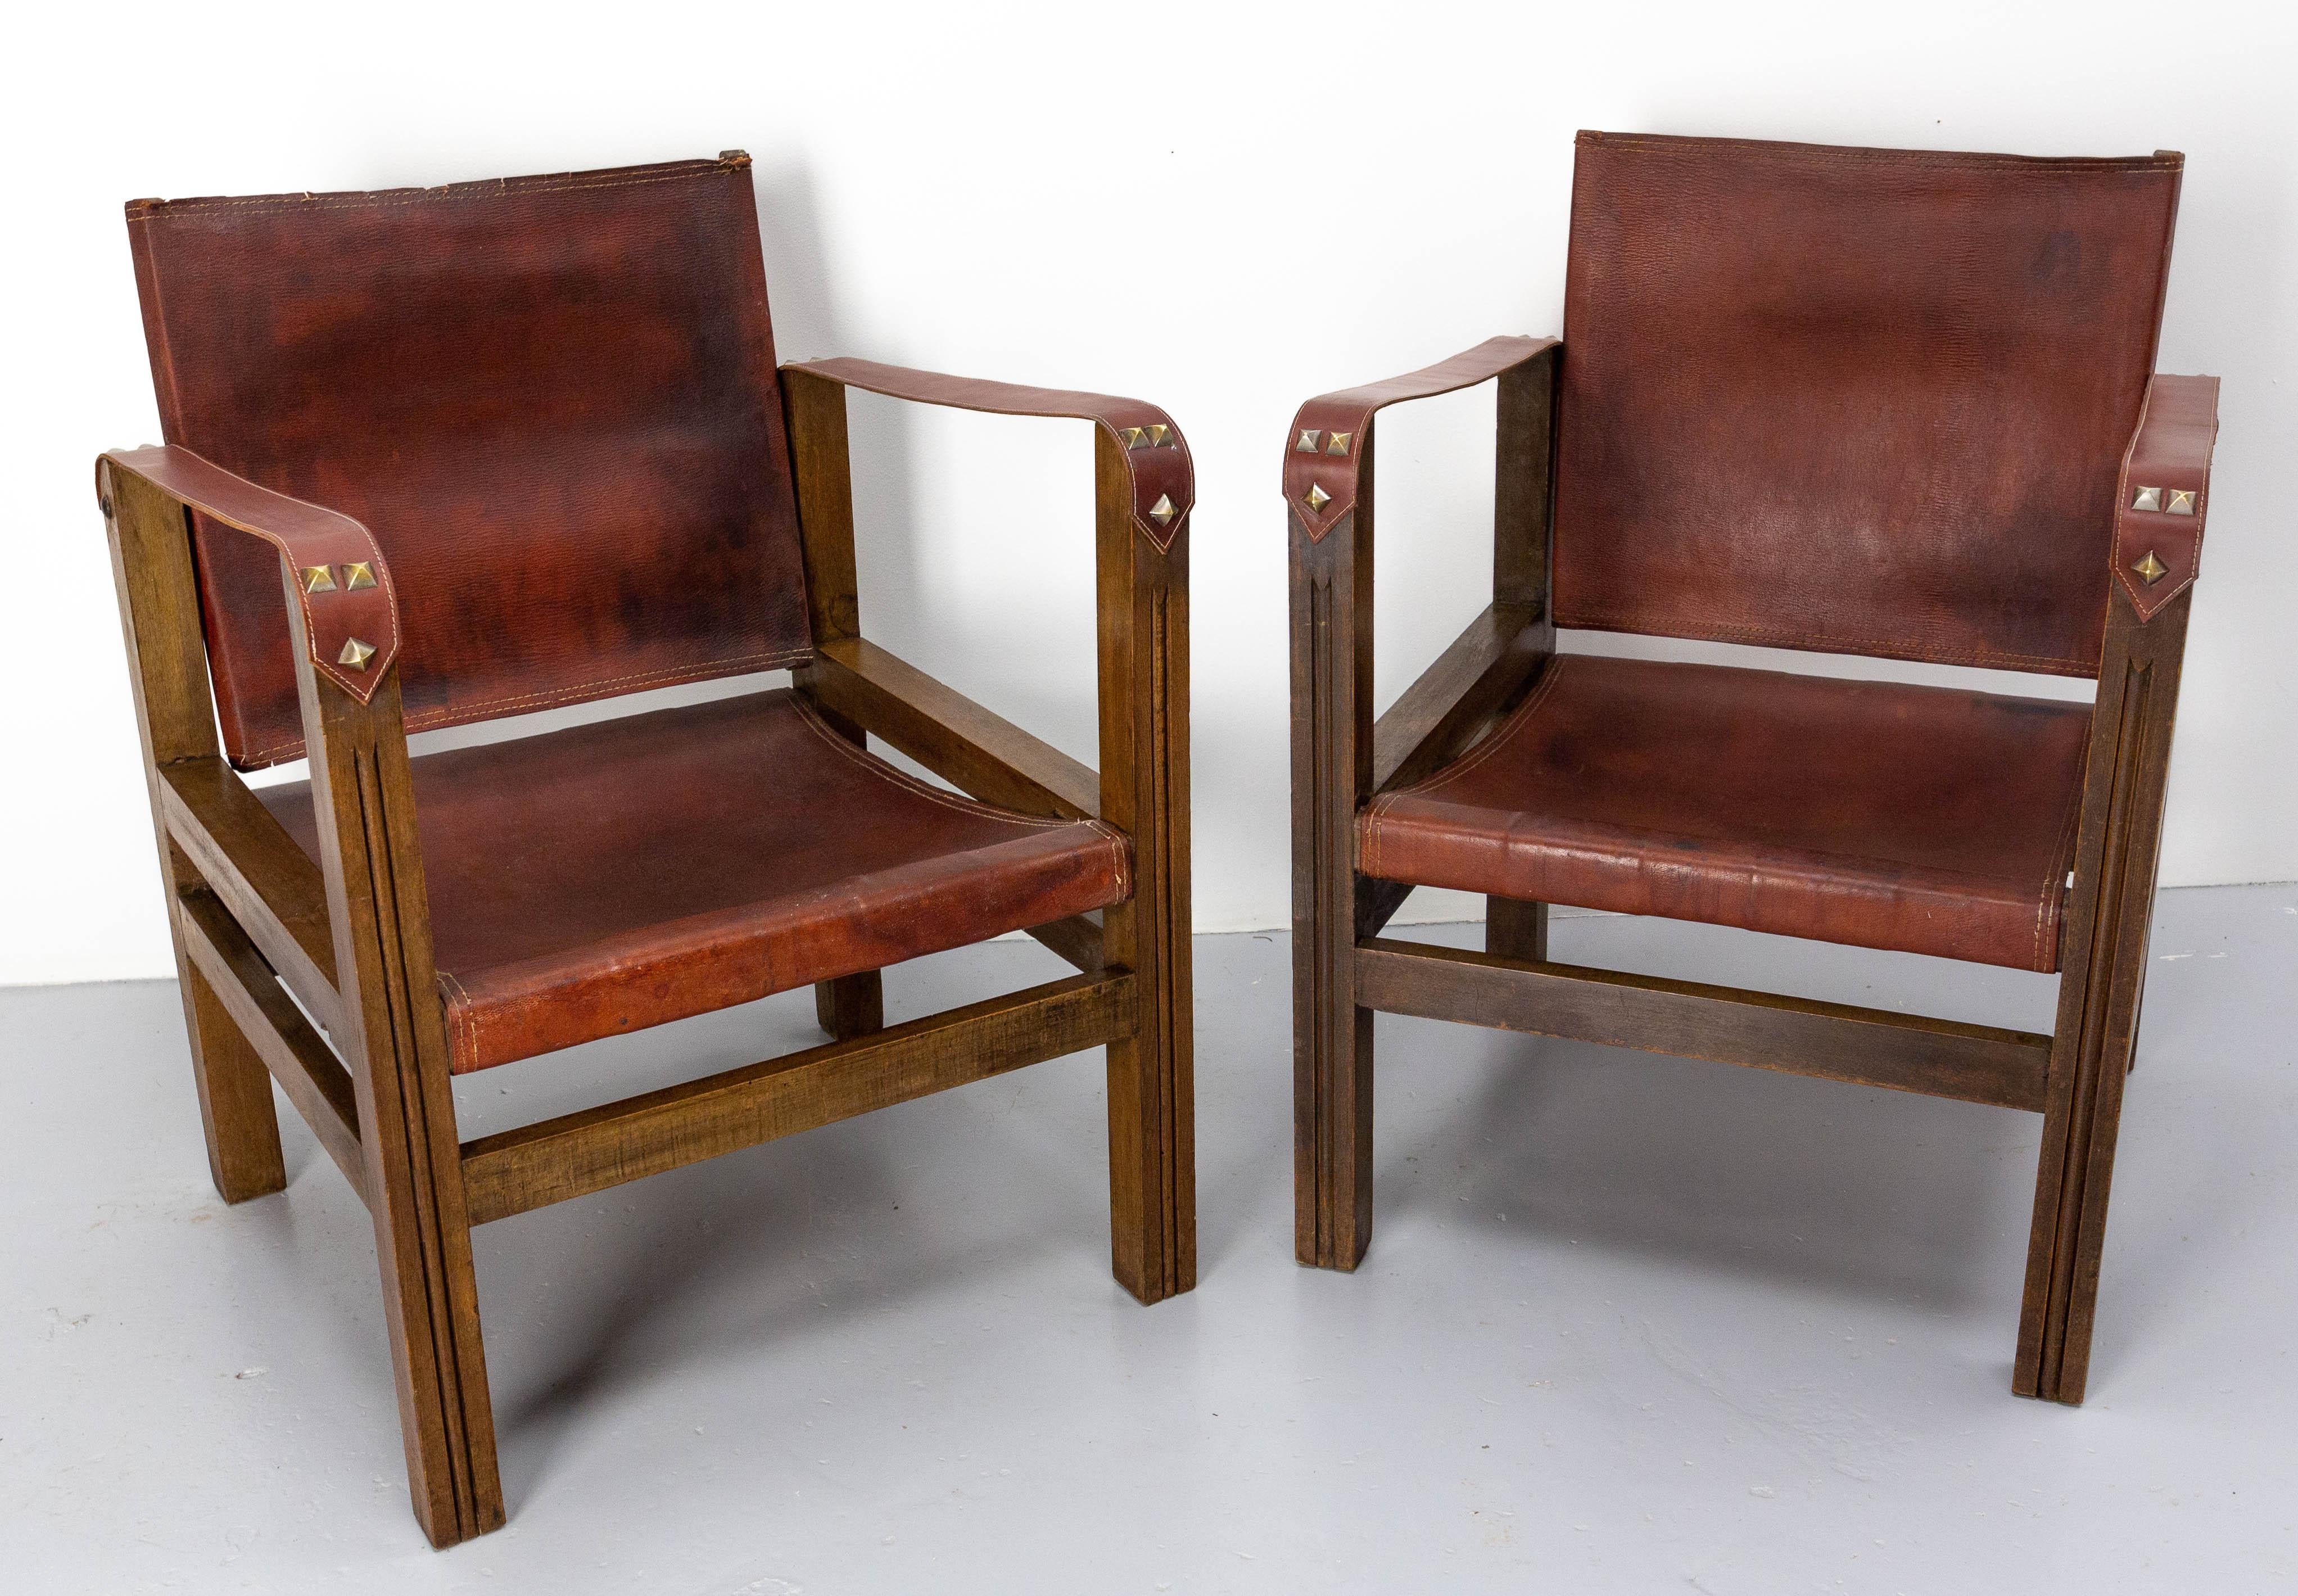 Paire de fauteuils ouverts ou chaises de bureau de style safari.
Les accoudoirs ont été remplacés par un cuir rouge similaire et patinés.
Un petit manque sur l'un des dossiers, et des marques d'usage qui donnent la patine aux chaises. (voir